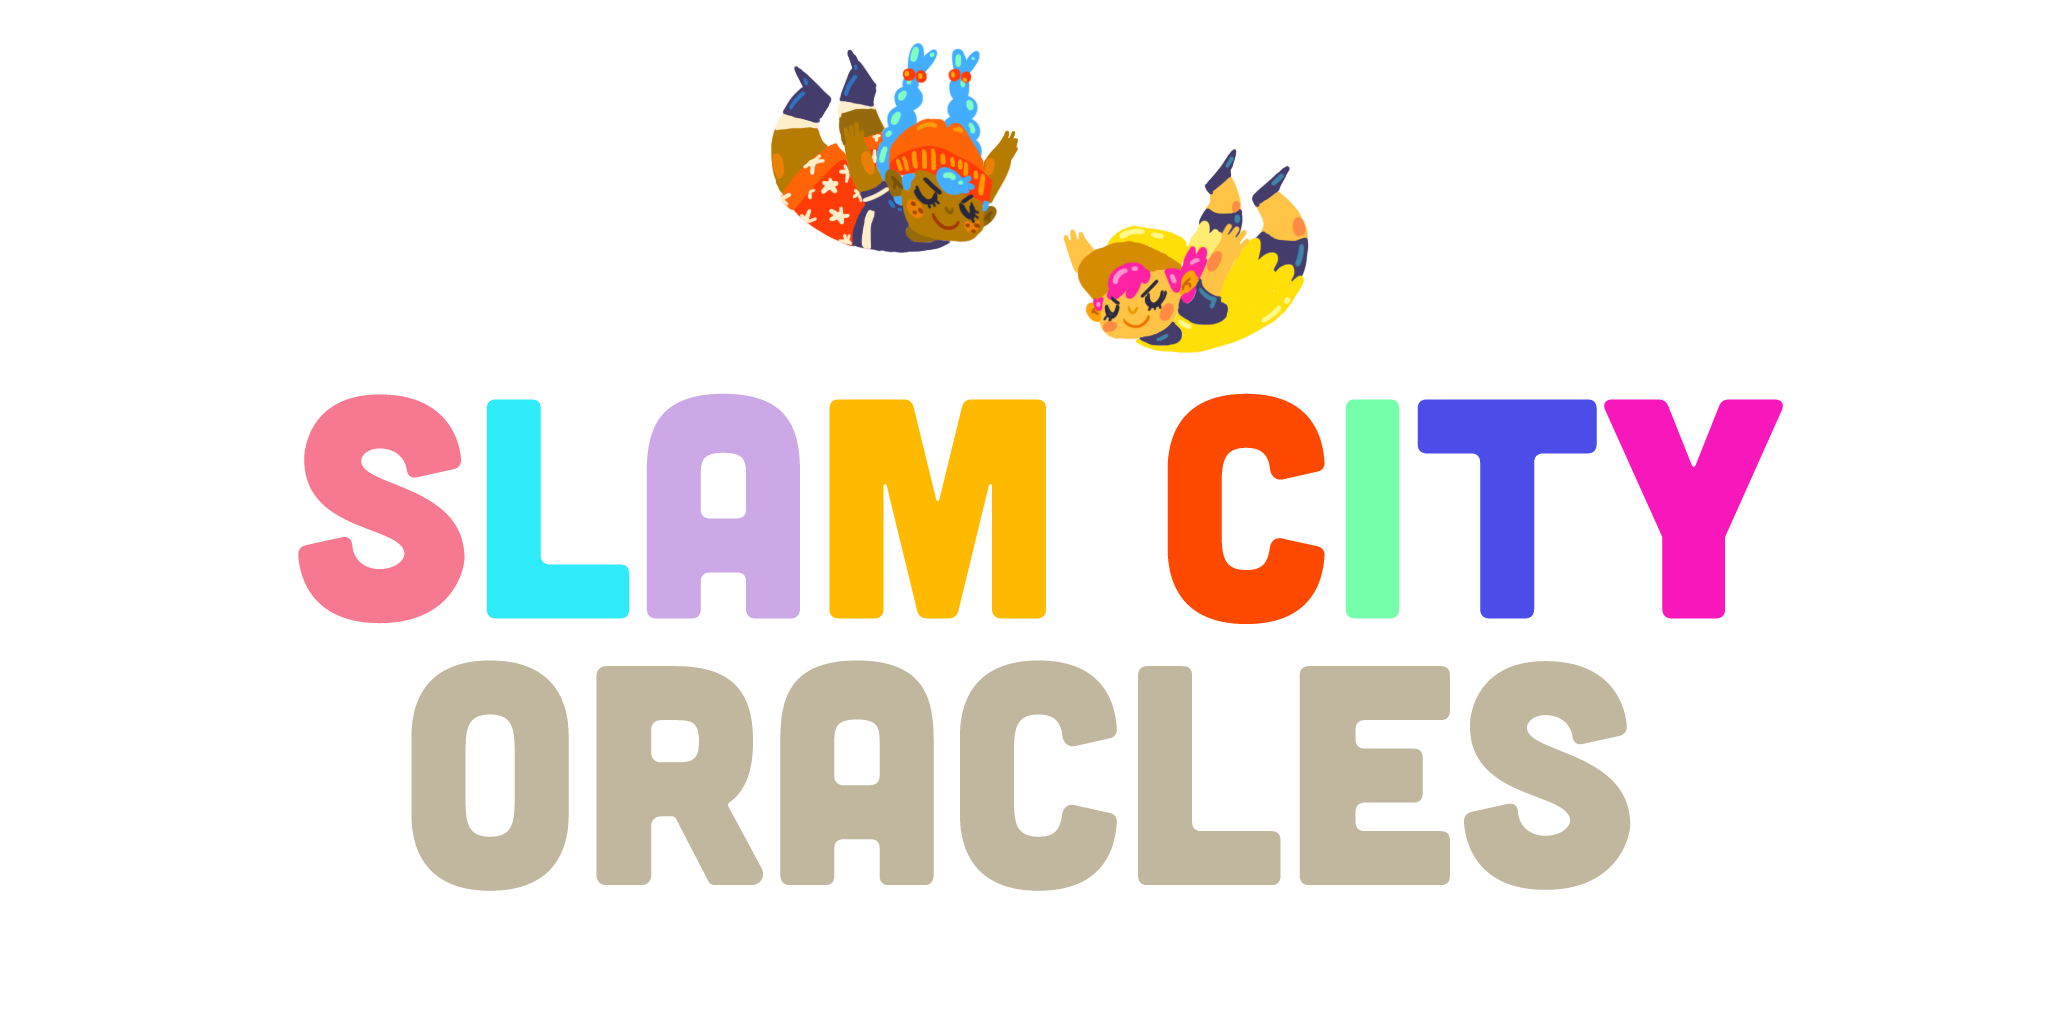 Slam City Oracles